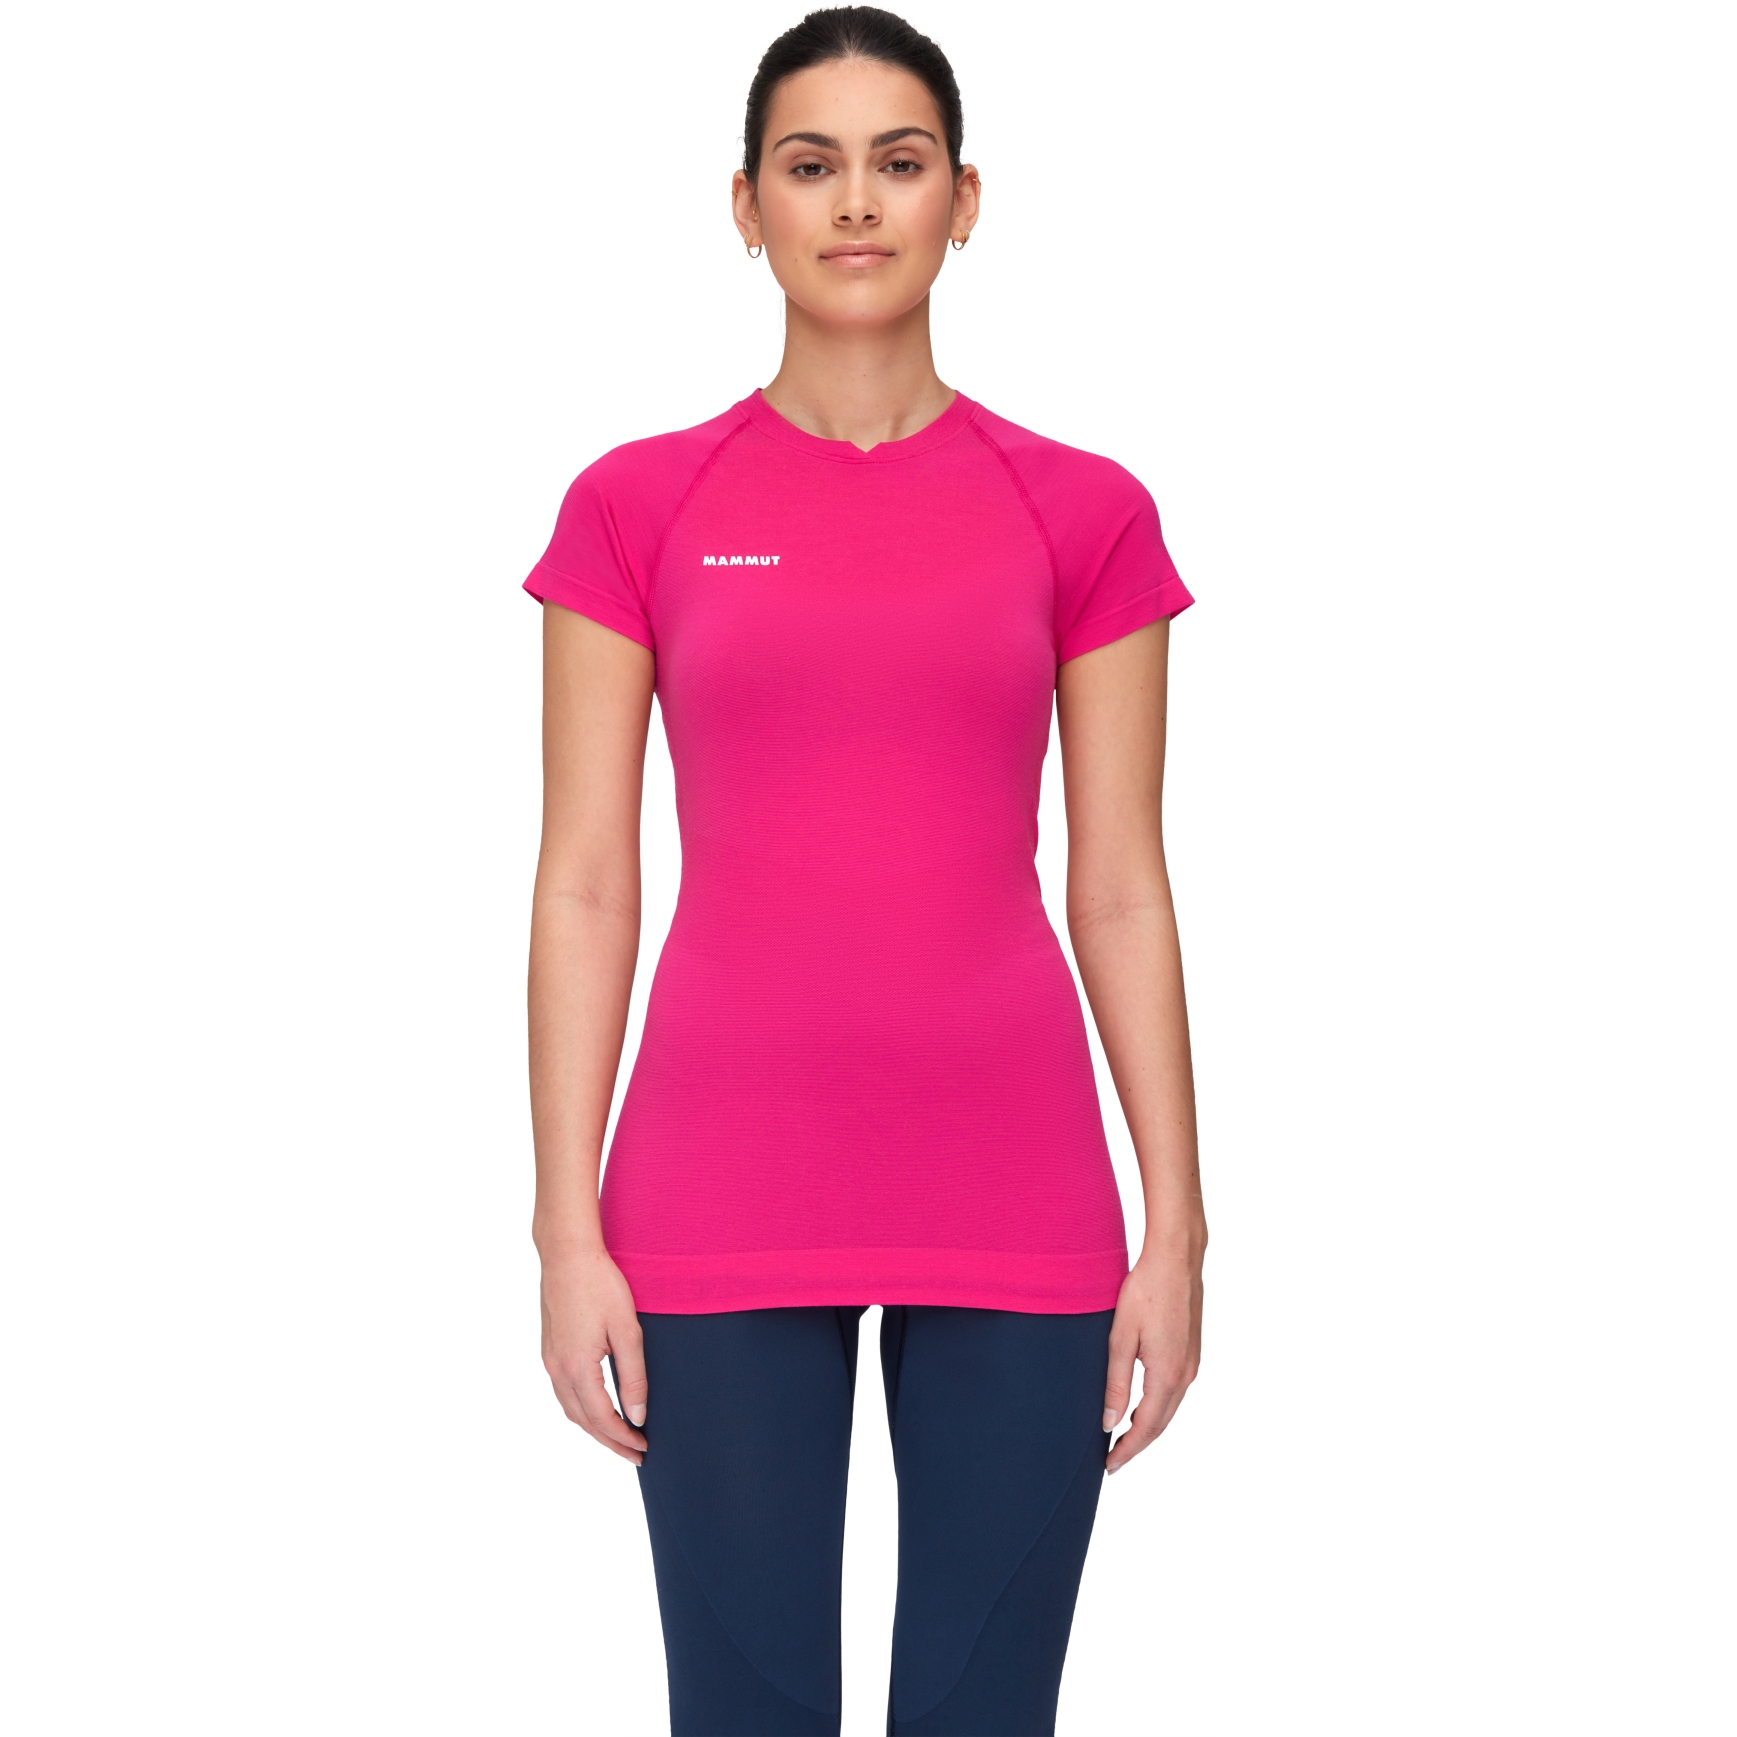 Produktbild von Mammut Trift T-Shirt Damen - pink